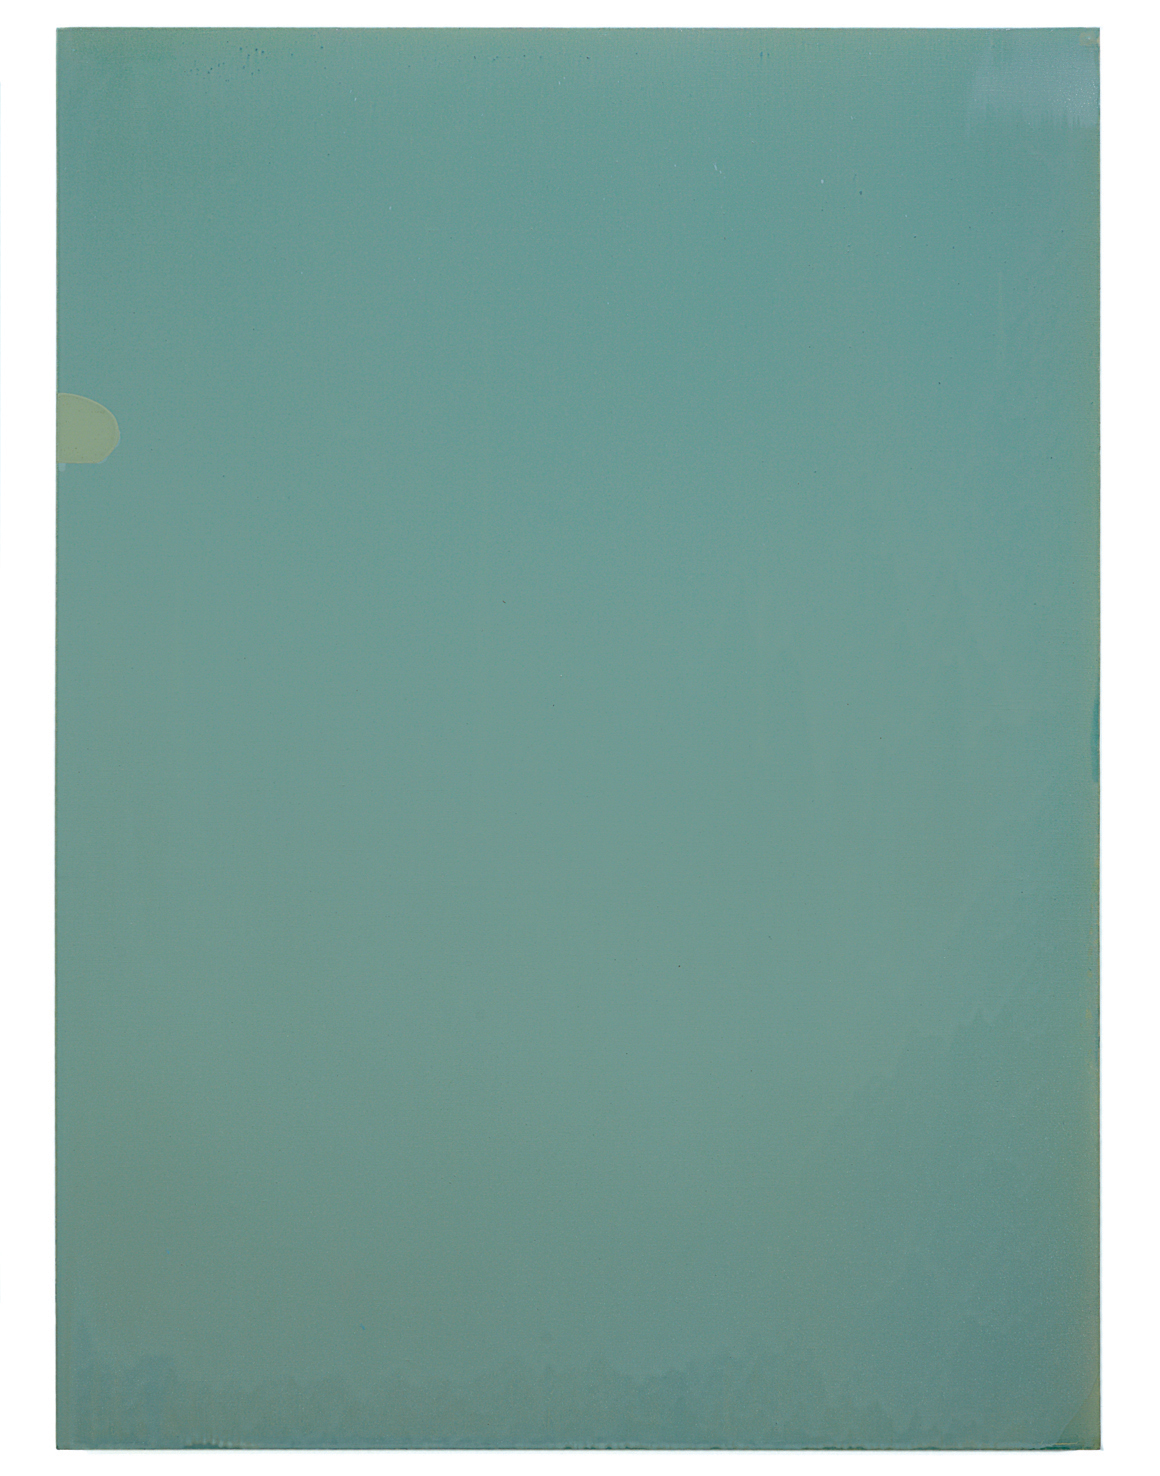  Luke HENG  Green on White  2015 Oil on linen H130 x W95 cm 